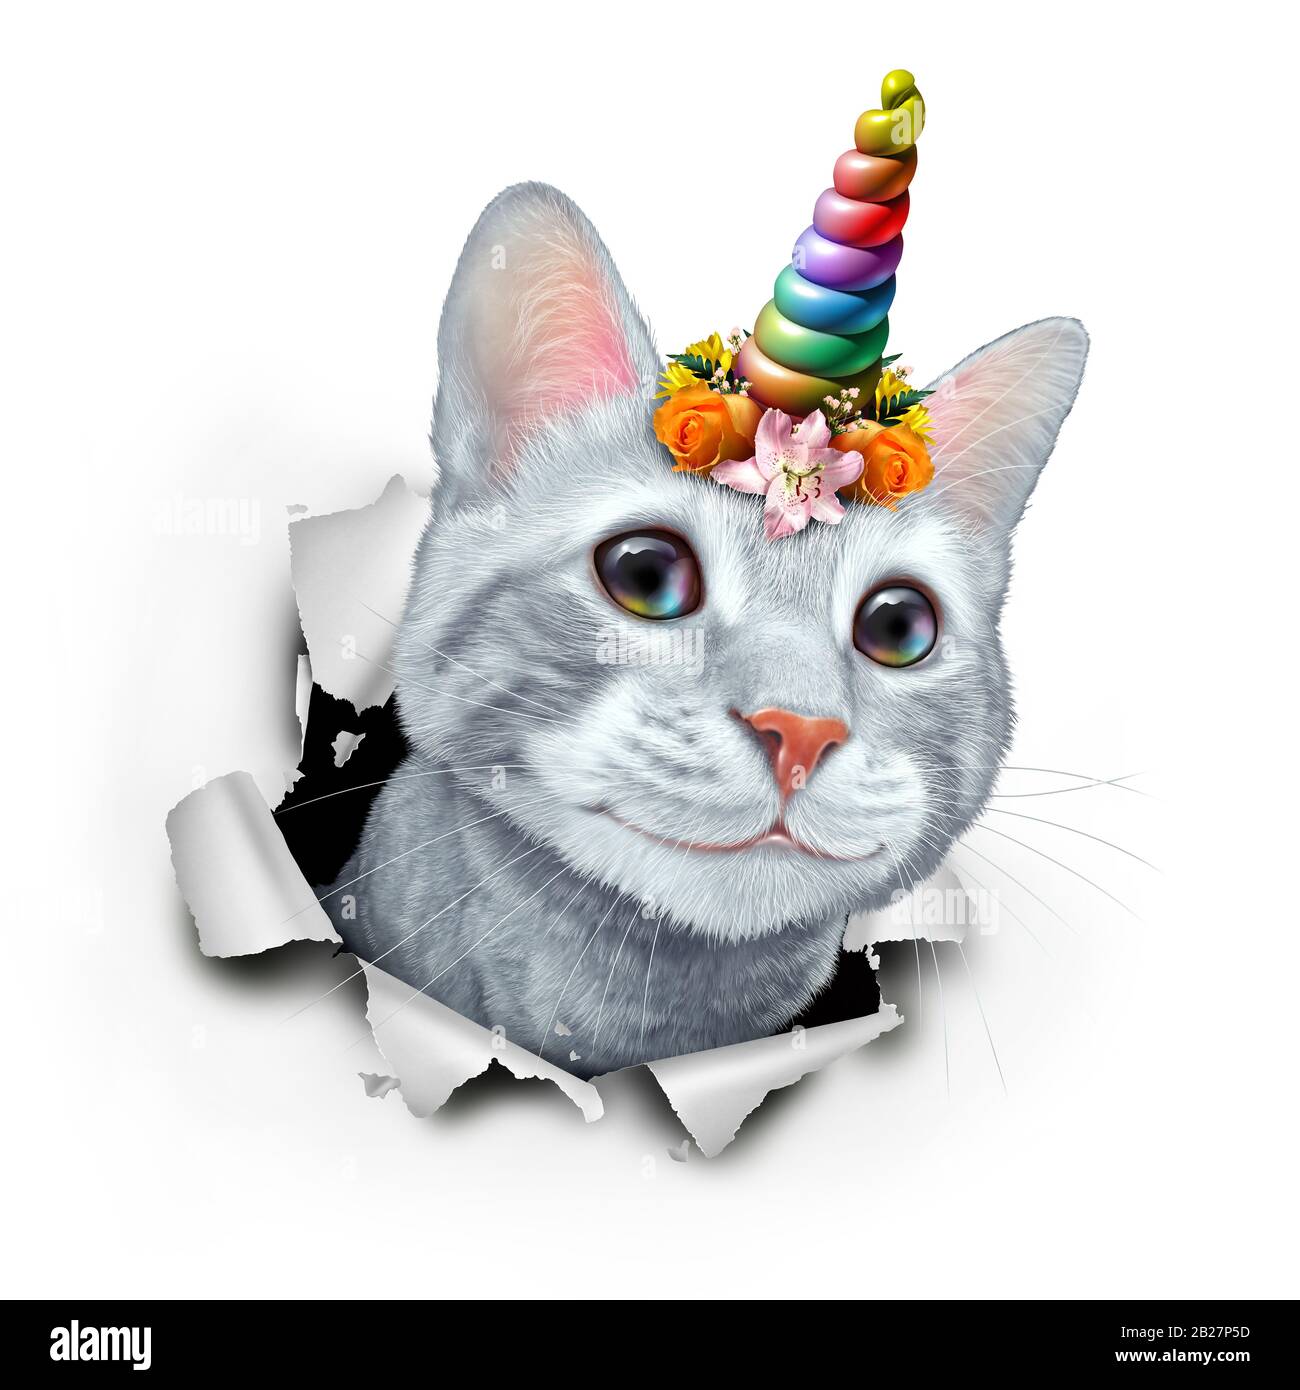 Kitty unicorn est un joli chaton avec un chat arc-en-ciel à pavillon magique et conte de fées avec une couronne de fleurs avec des éléments d'illustration en relief. Banque D'Images